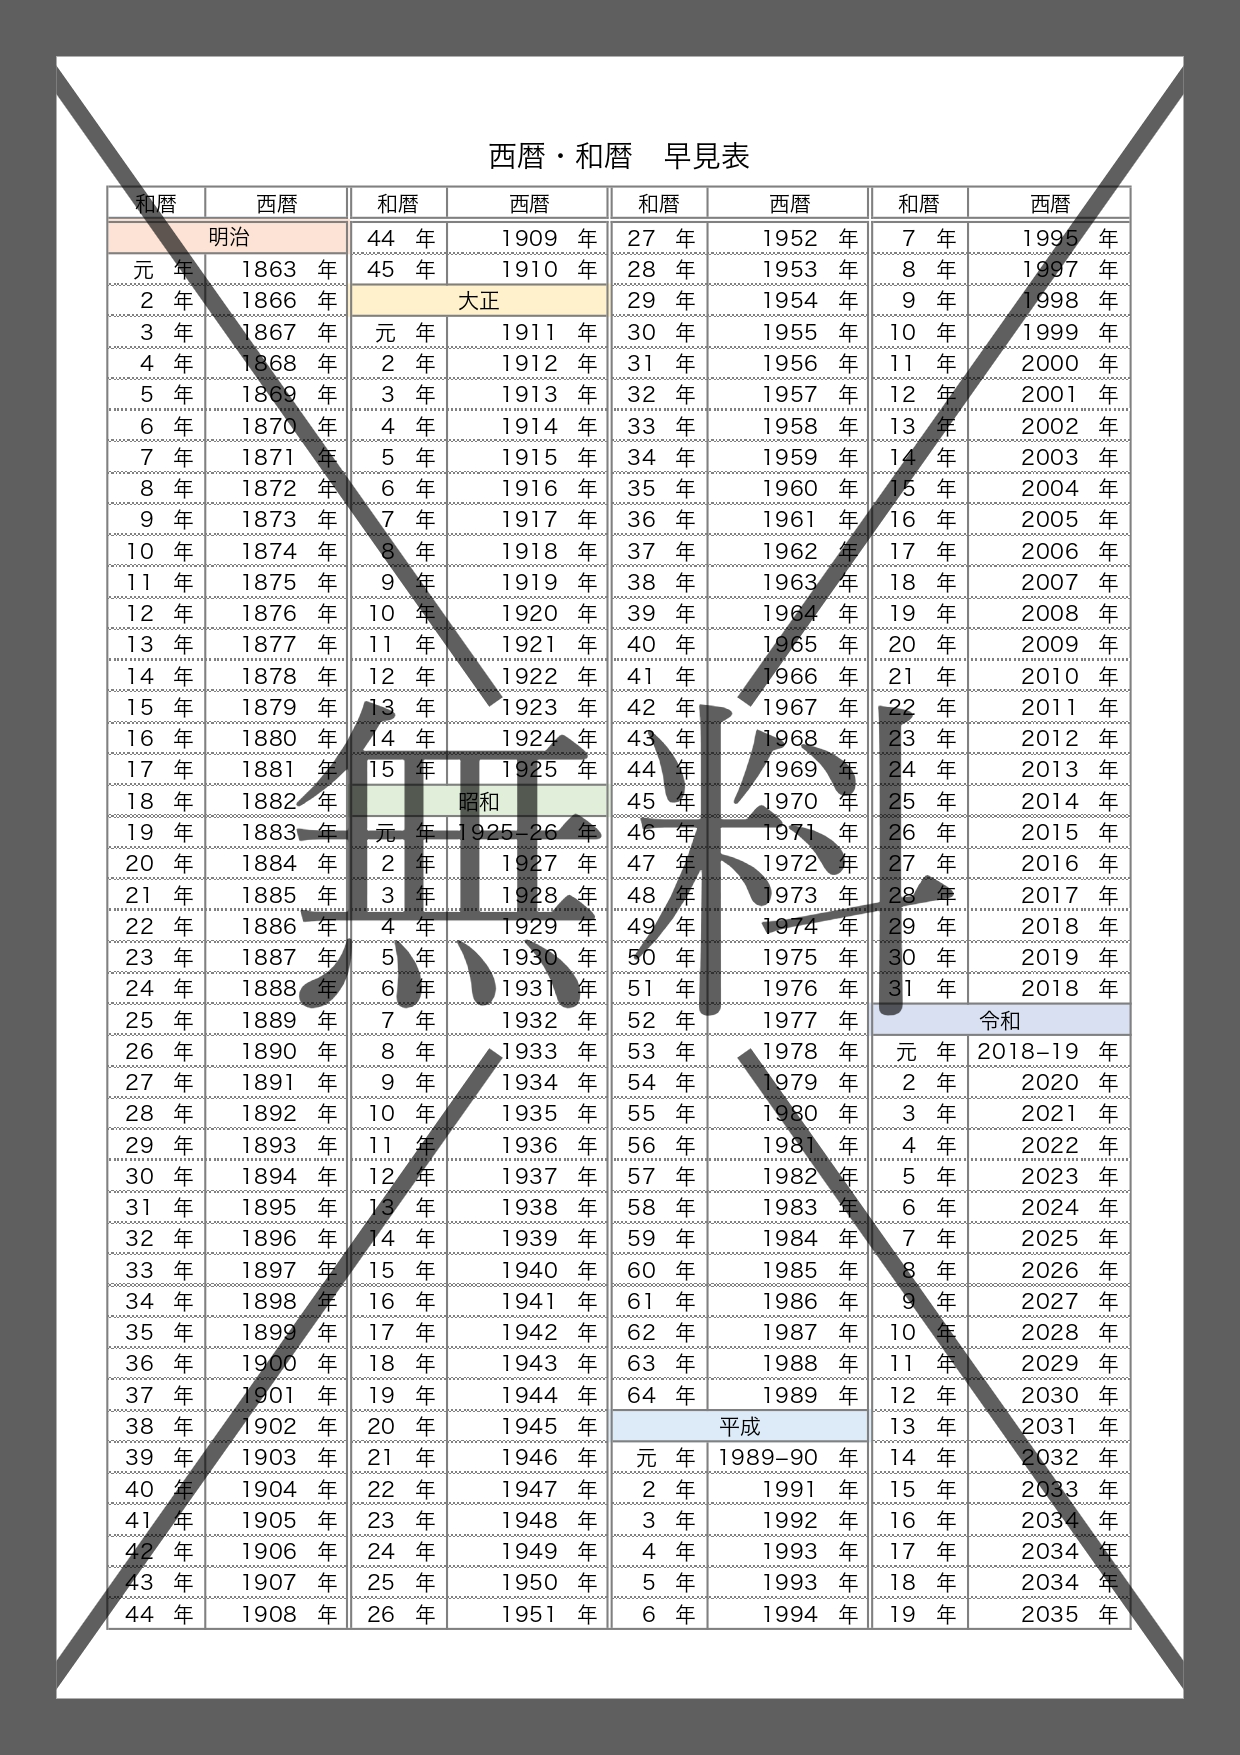 西暦と和暦の比較表（早見表）PDFでA4サイズの印刷用・Excel・Wordで年齢や学年を作成のテンプレートを無料ダウンロード